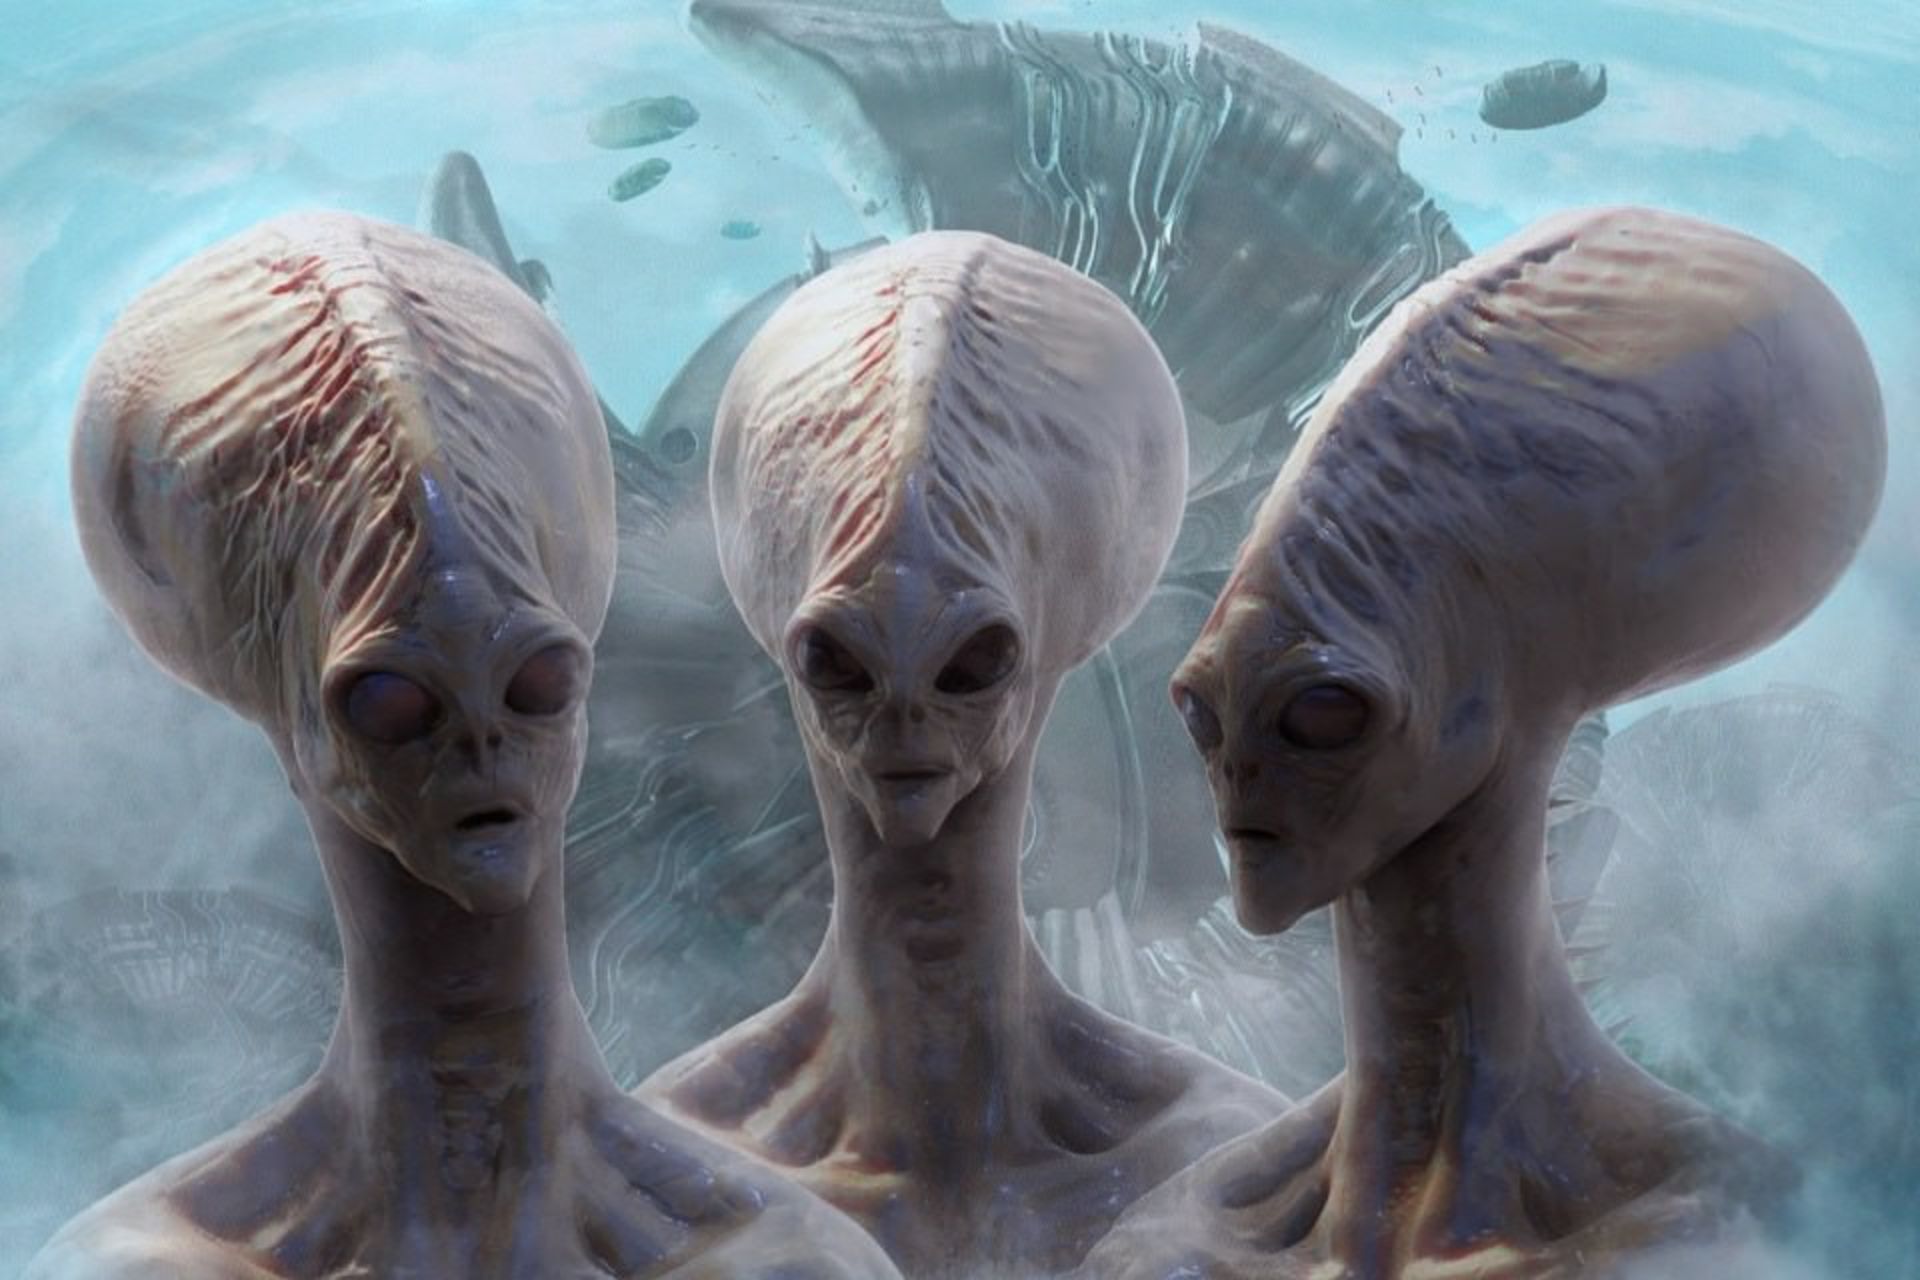 موجودات فرازمینی / aliens